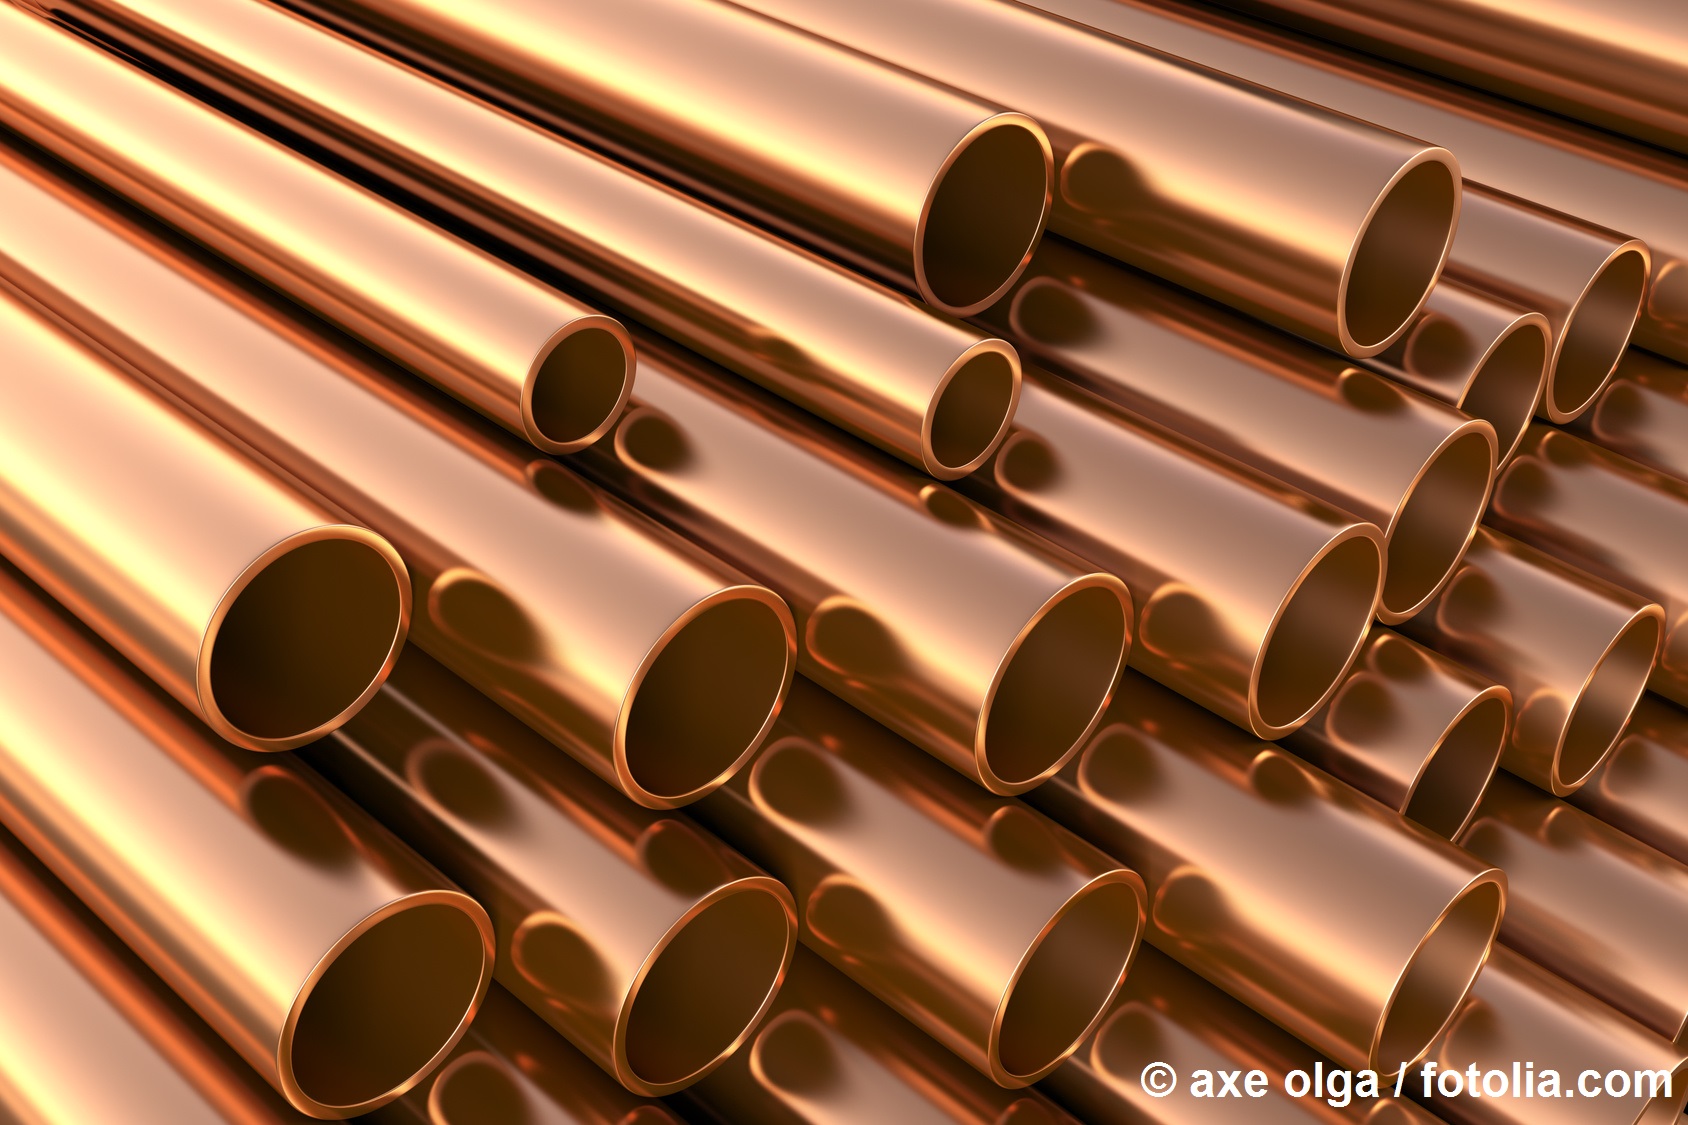 Glänzende Kupferrohre übereinander aufgestapelt als Anwendungsbeispiel für das Material Kupfer und Kupferoxide Bildquelle axe olga / fotolia.com